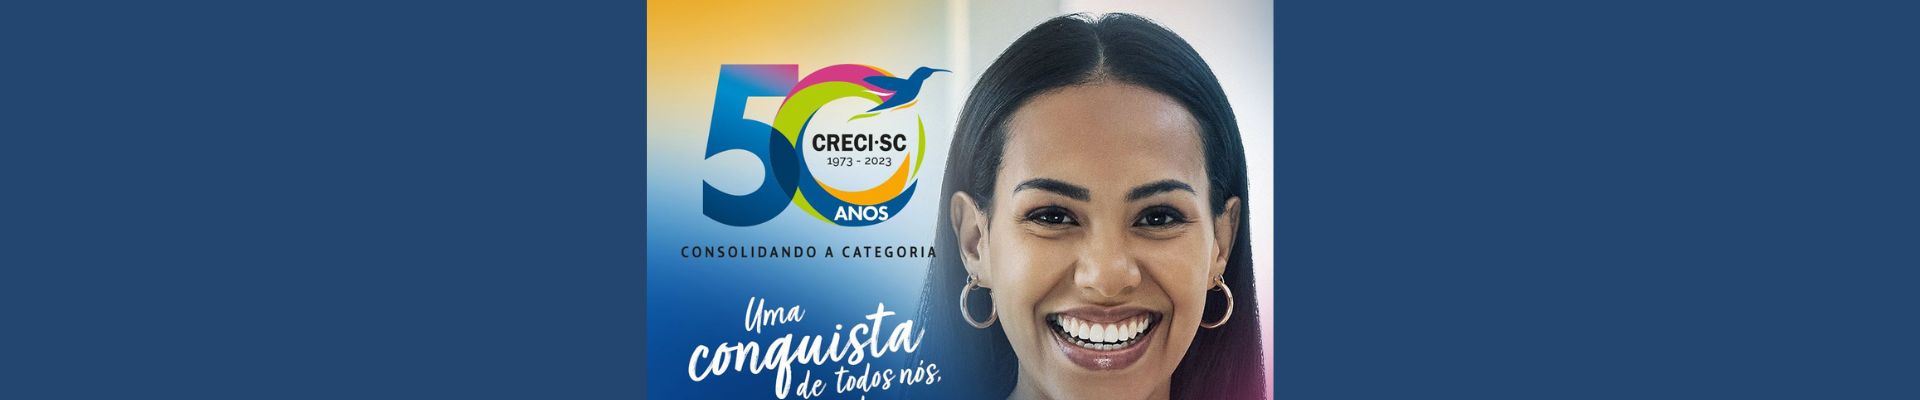 Em comemoração aos 50 anos, CRECI/SC lança campanha publicitária